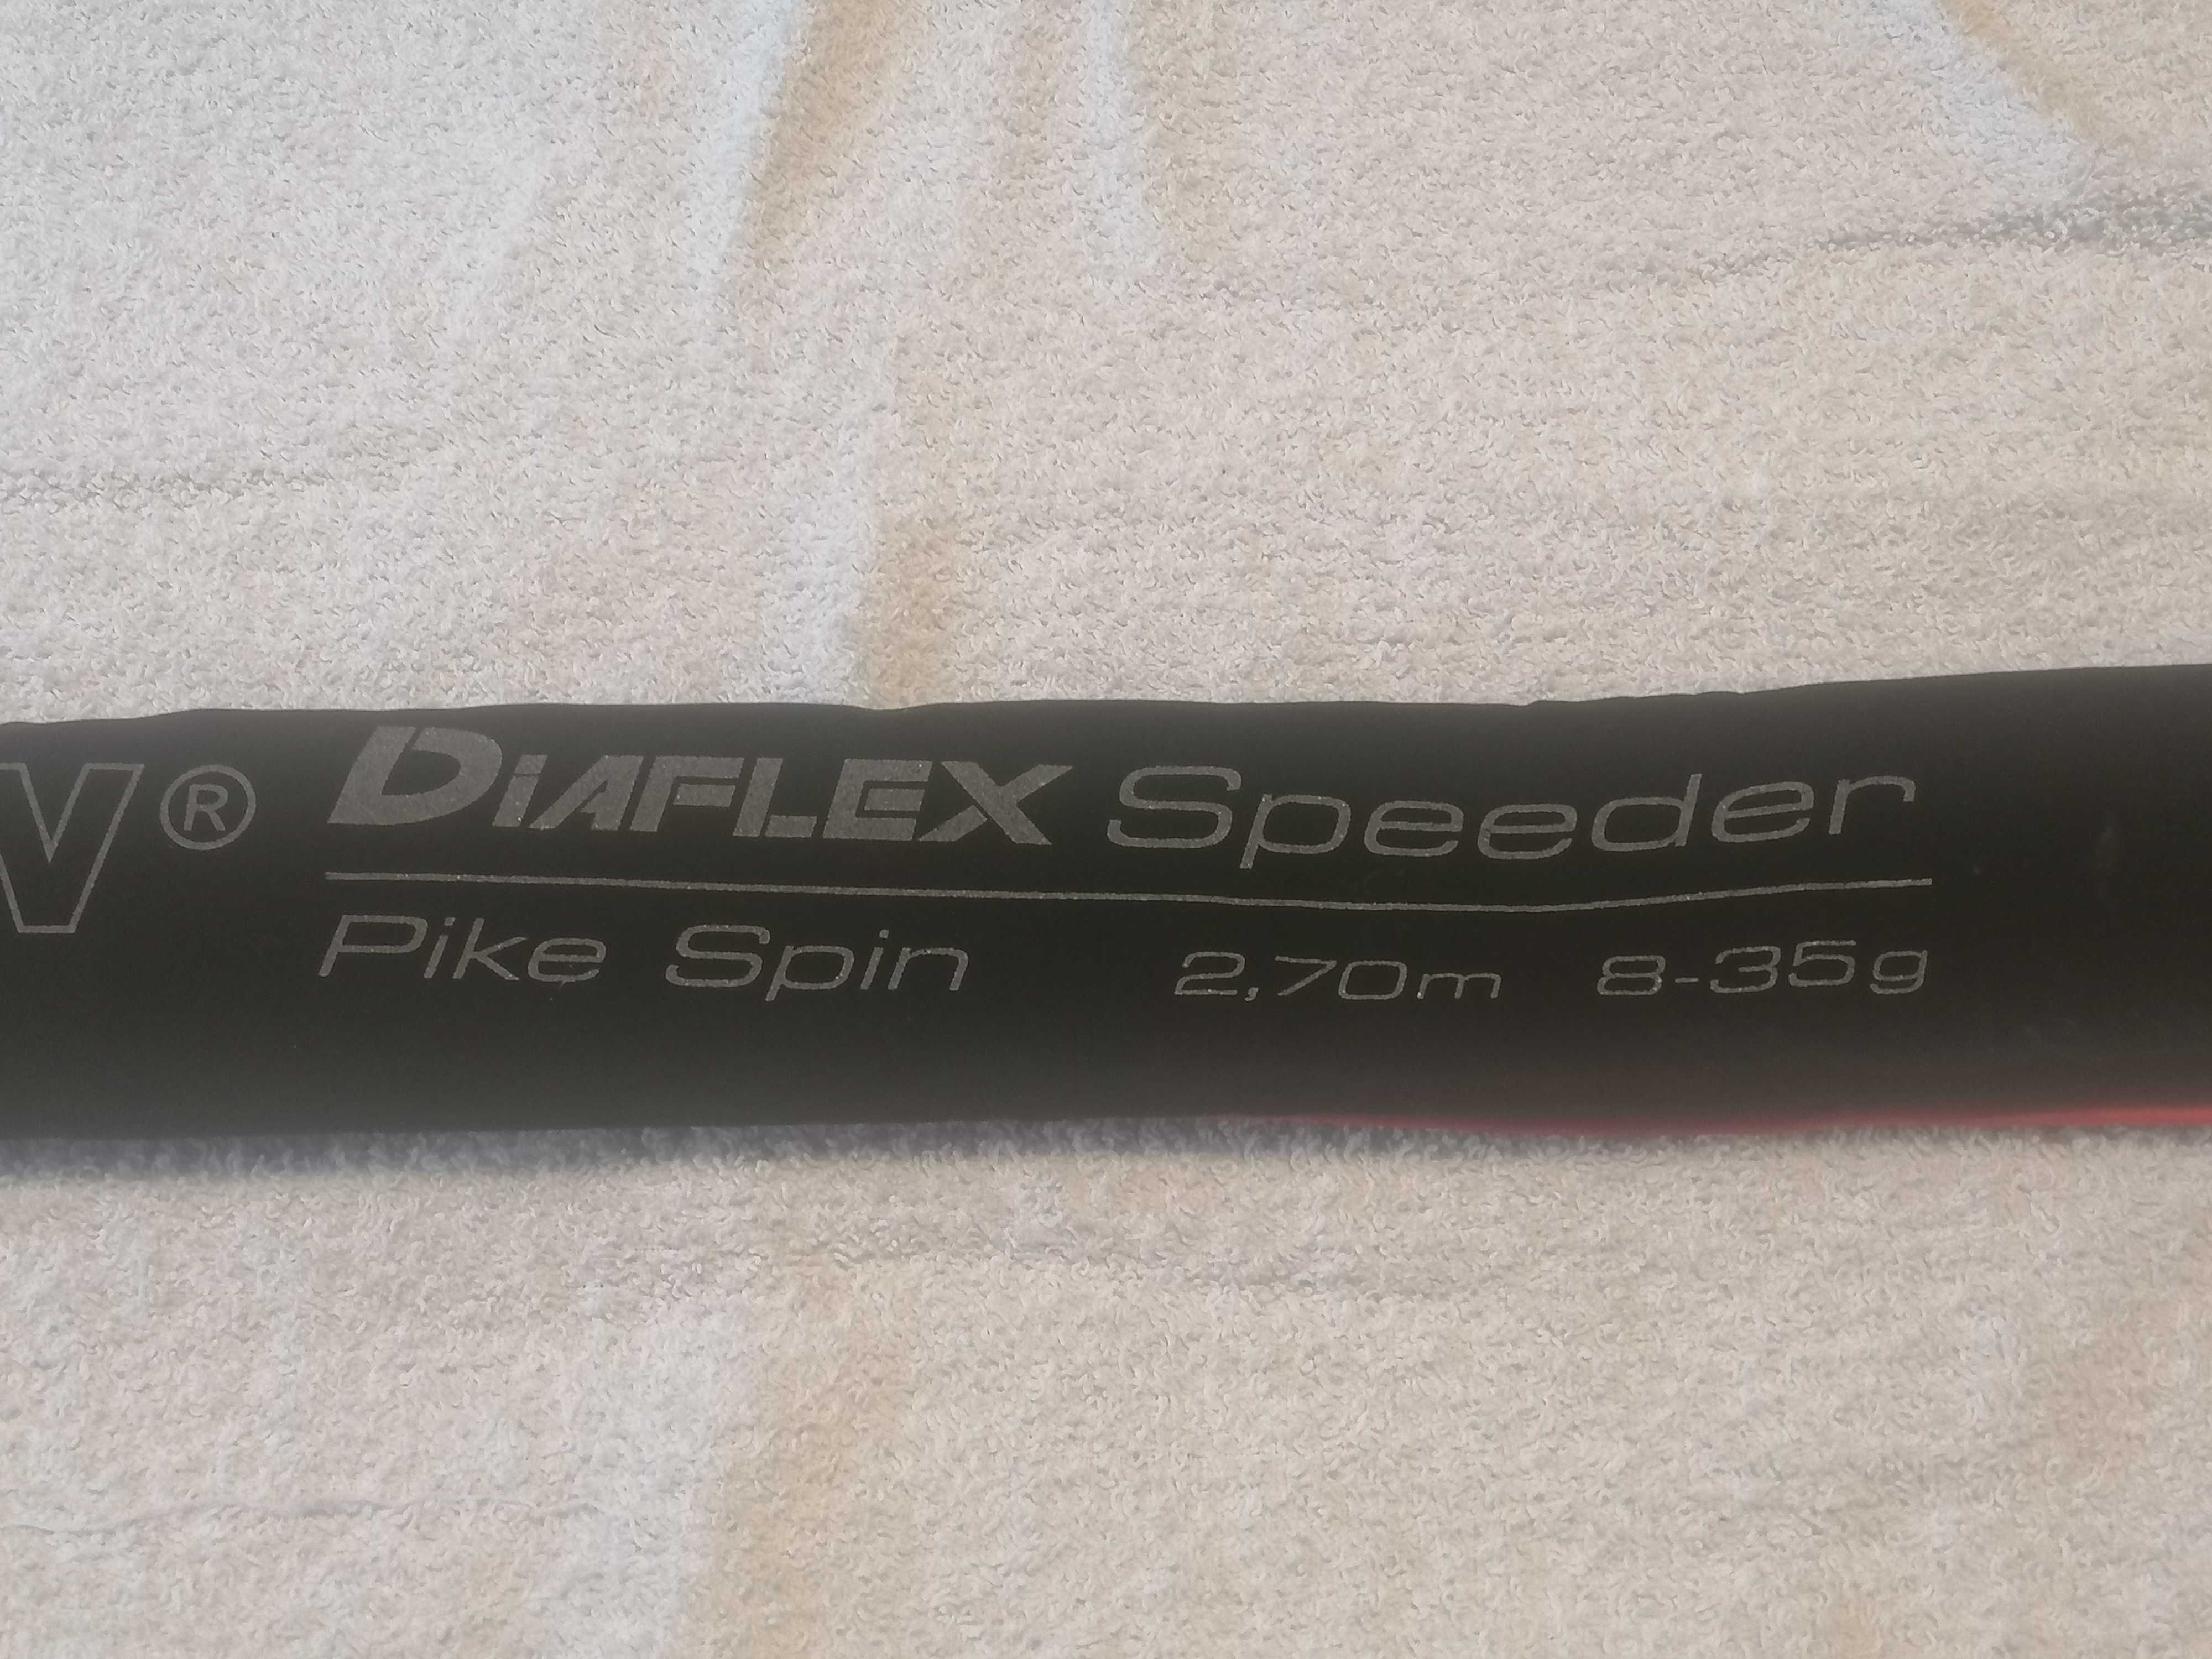 Wędka Robinson Diaflex speeder 2.70m 8-35g